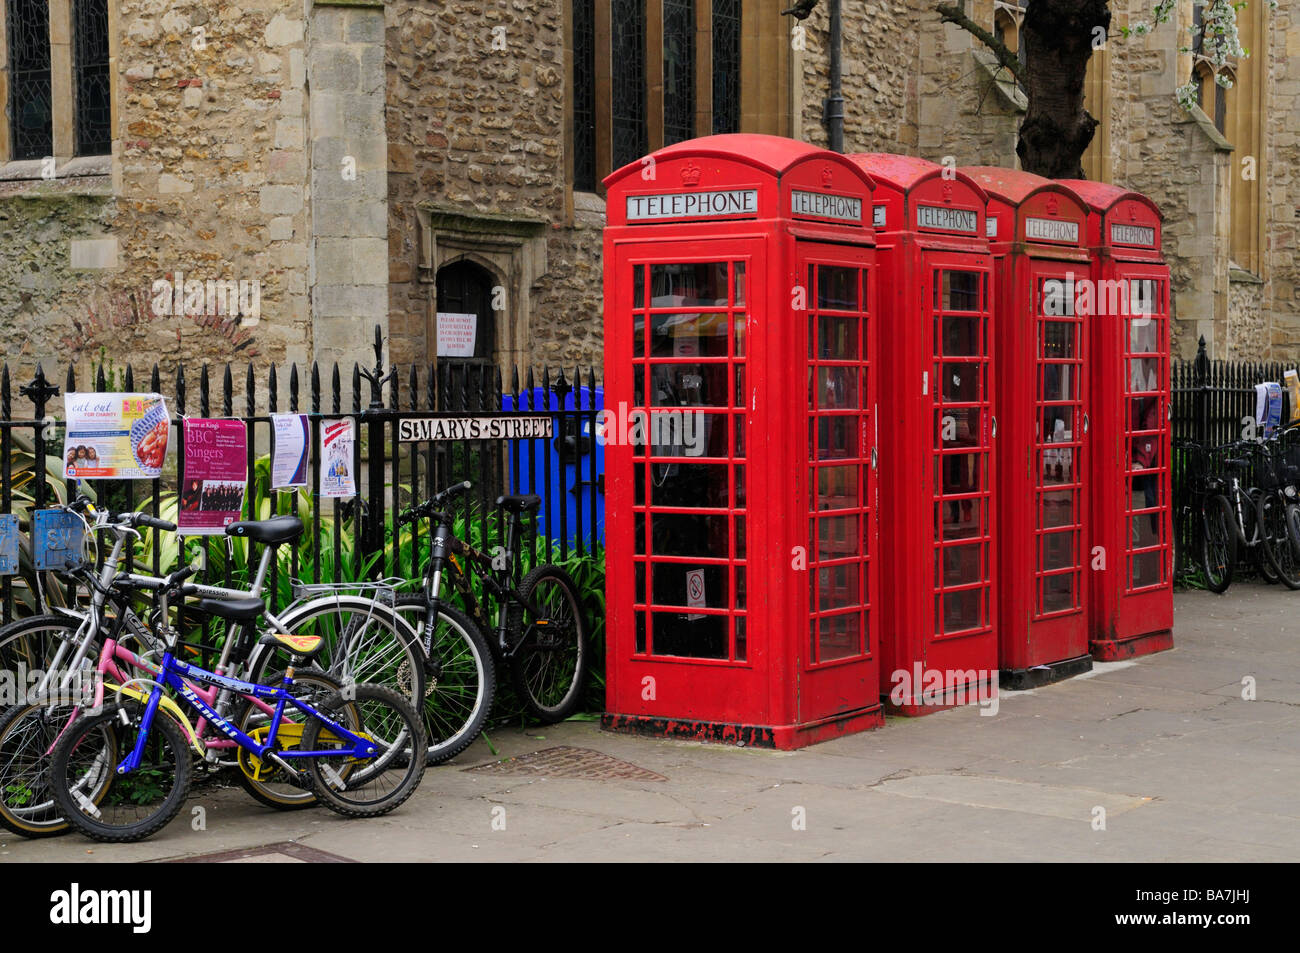 Gruppe von vier Telefonzellen und Fahrräder außerhalb großer St. Marys Church, Cambridge England Uk Stockfoto